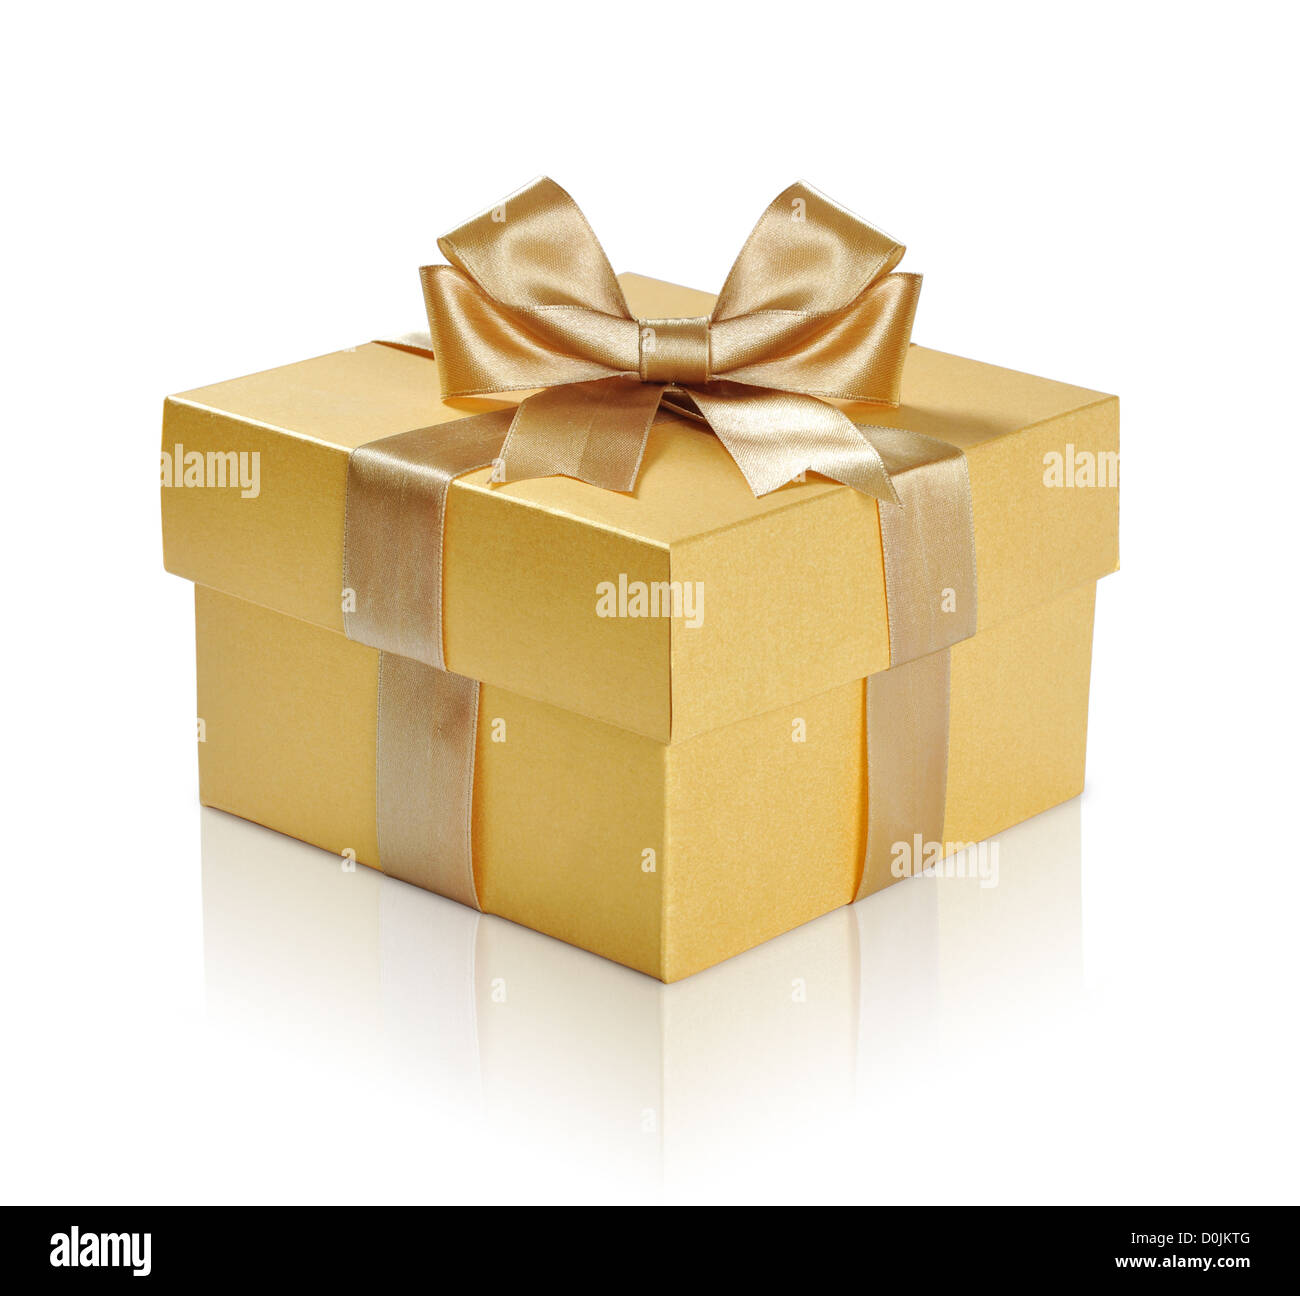 Boîte cadeau doré avec ruban doré sur fond blanc. Chemin de détourage inclus. Banque D'Images